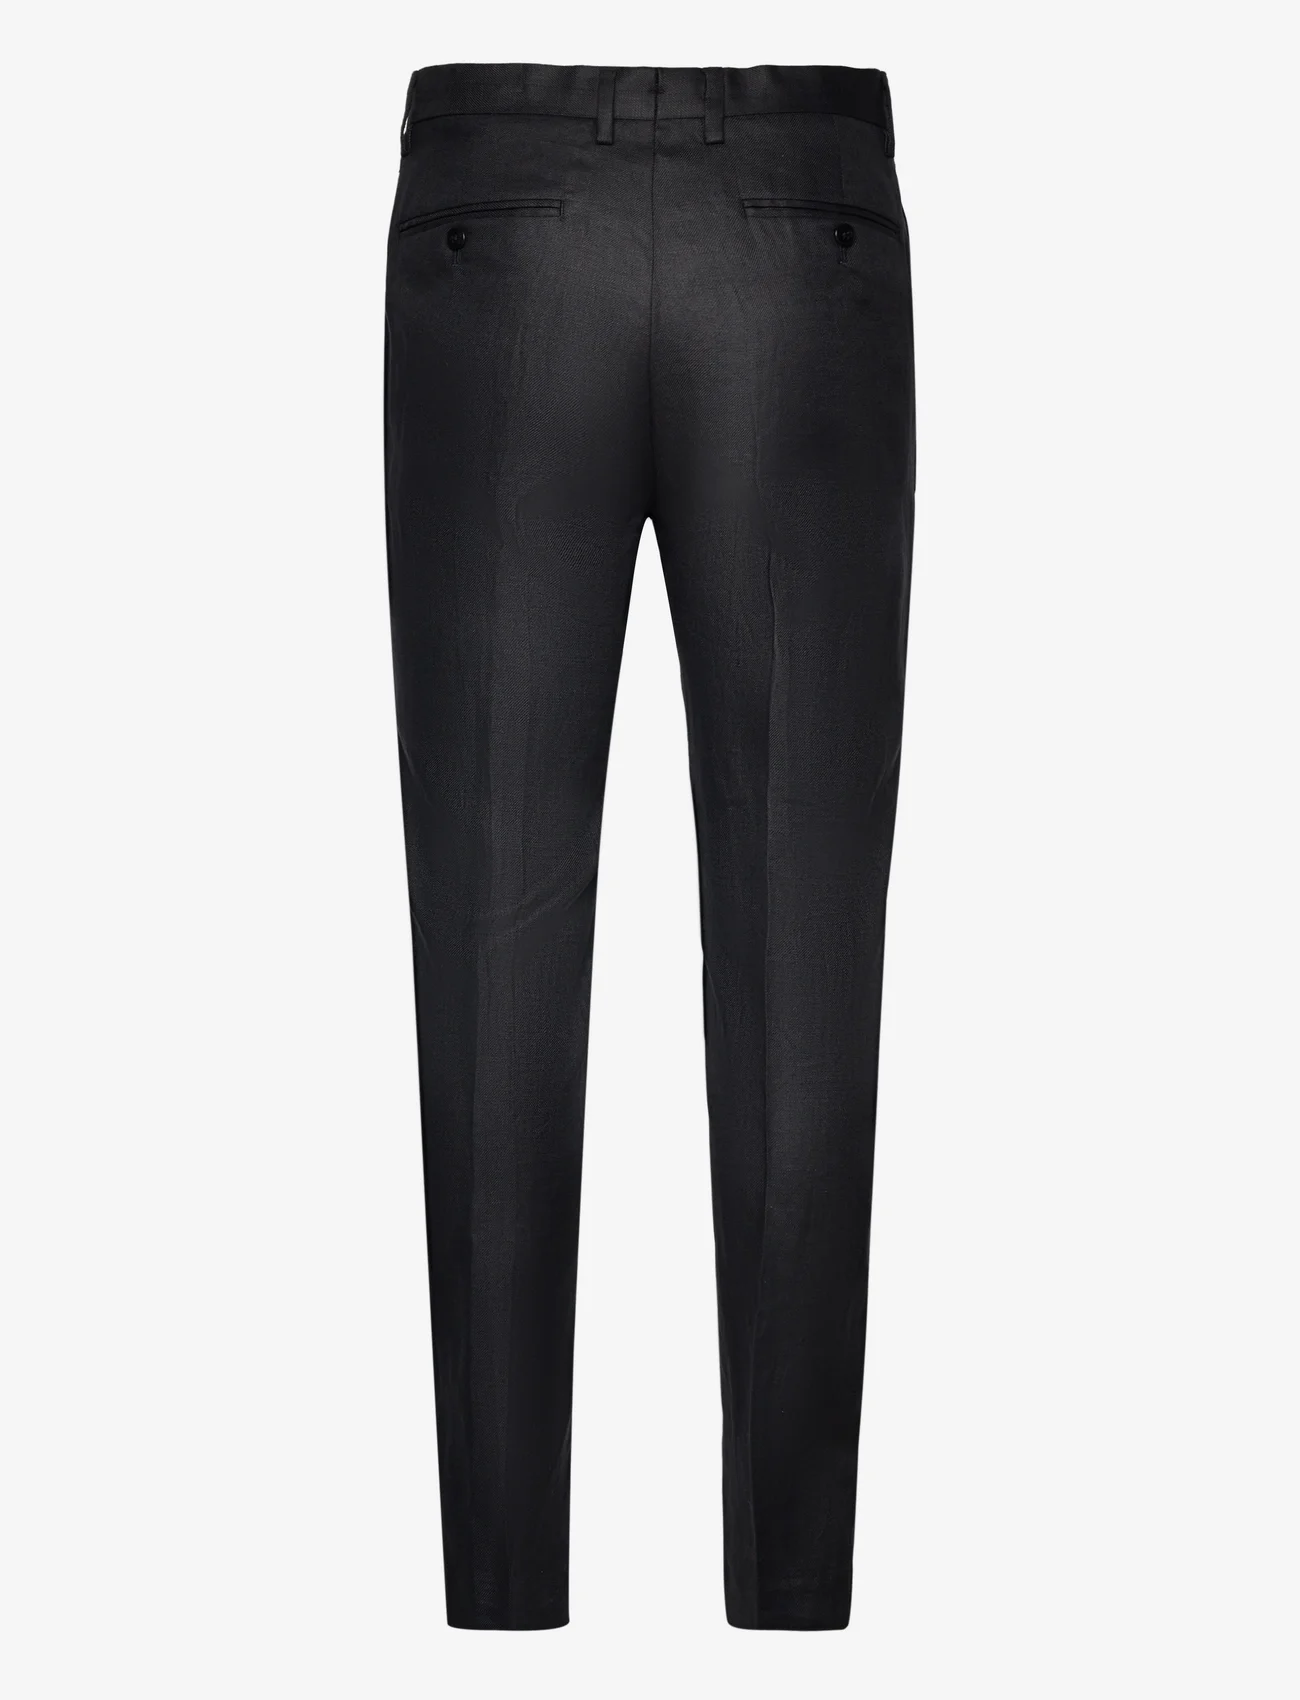 Mango - 100% linen suit trousers - black - 1